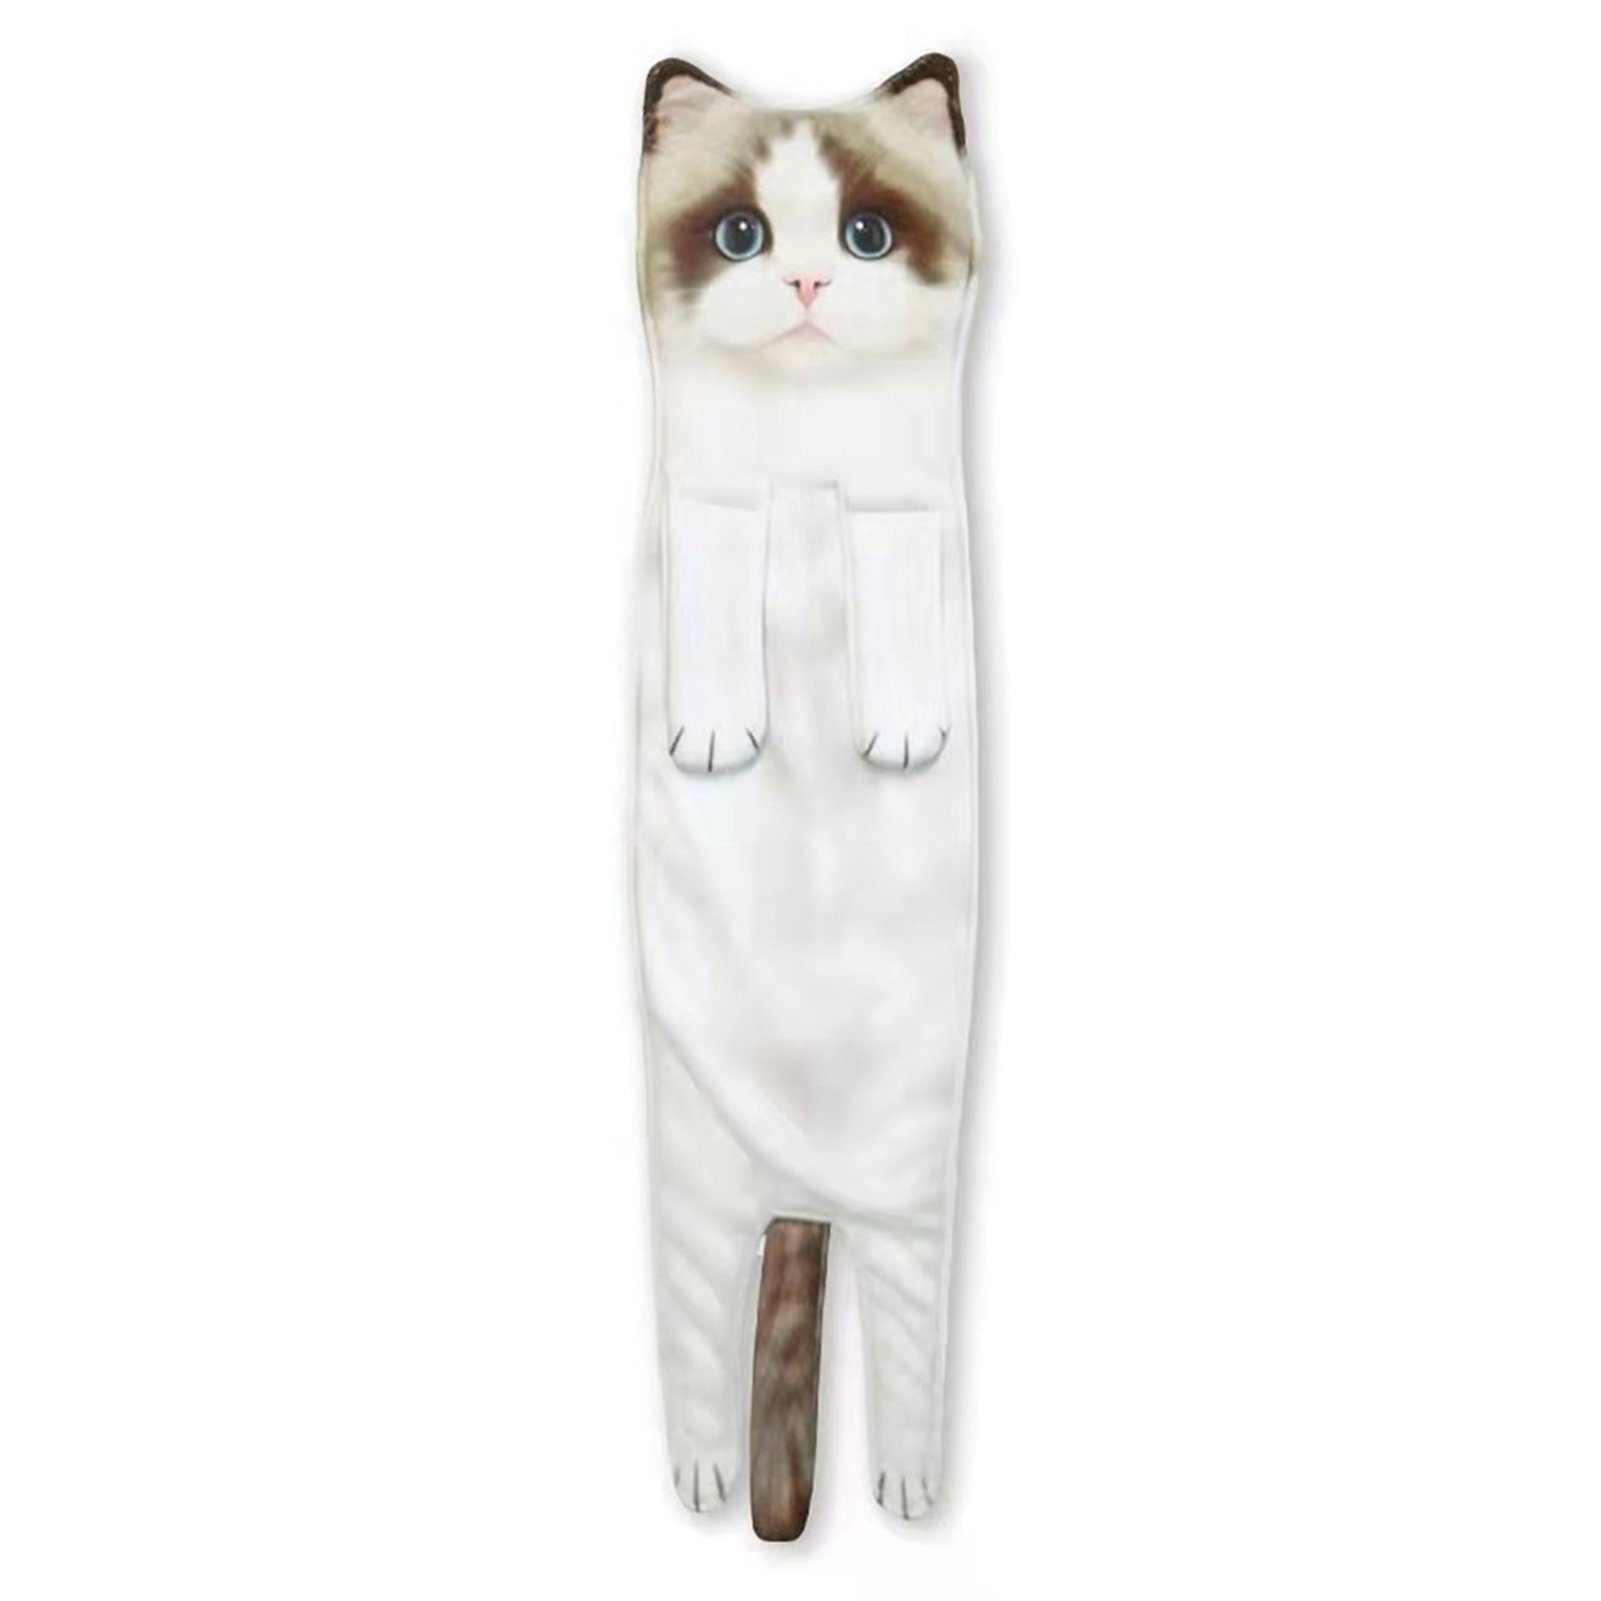 Blusmart Handtuch Set Niedliches Katzenhandtuch, cat Mehrzweck-Mikrofaser-Gesichtshandtuch, Zum ragdoll